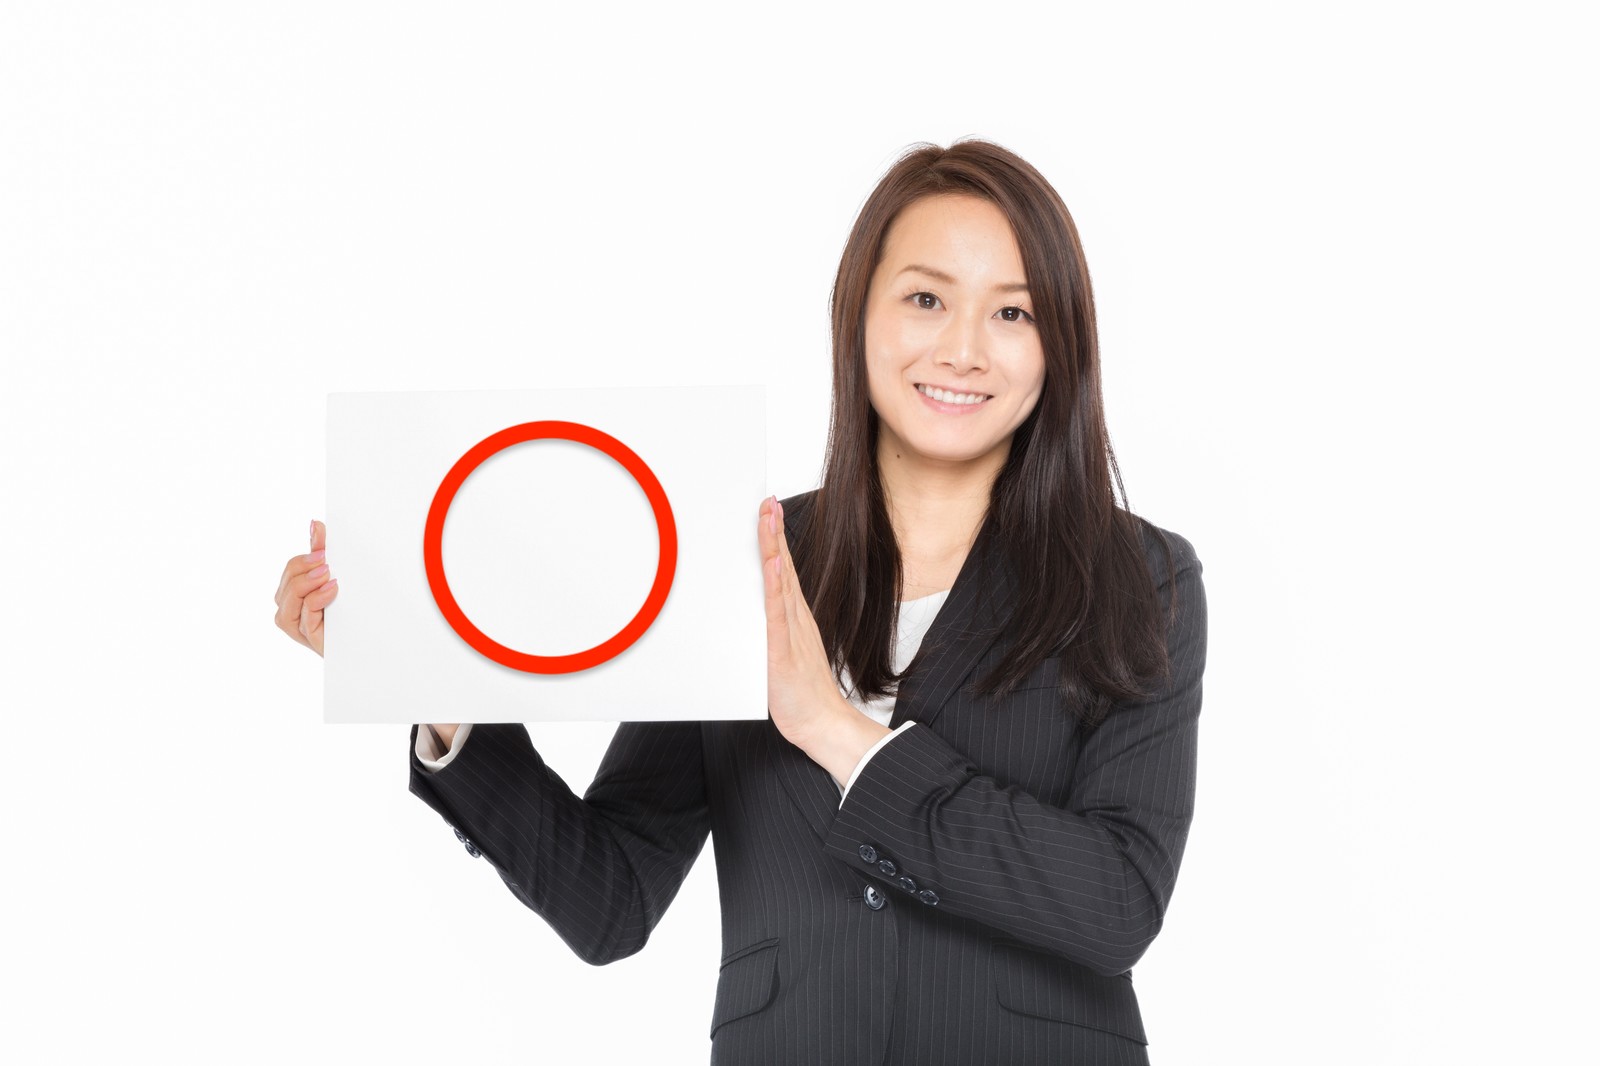 スーツを着た女性が赤い丸を描いたボードを掲げている